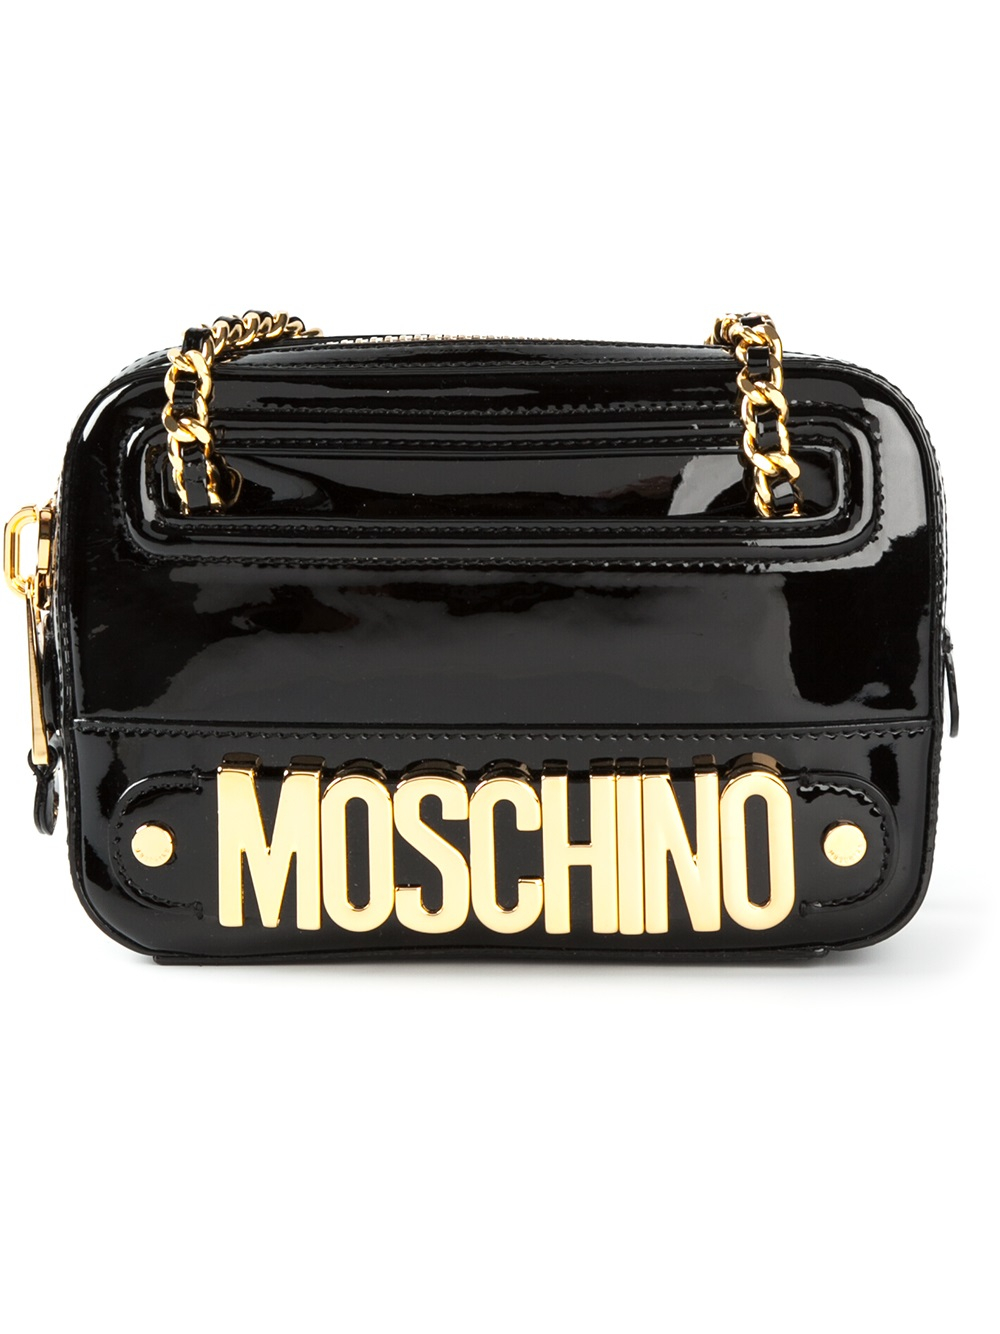 Moschino Logo Charm Pochette in Black | Lyst